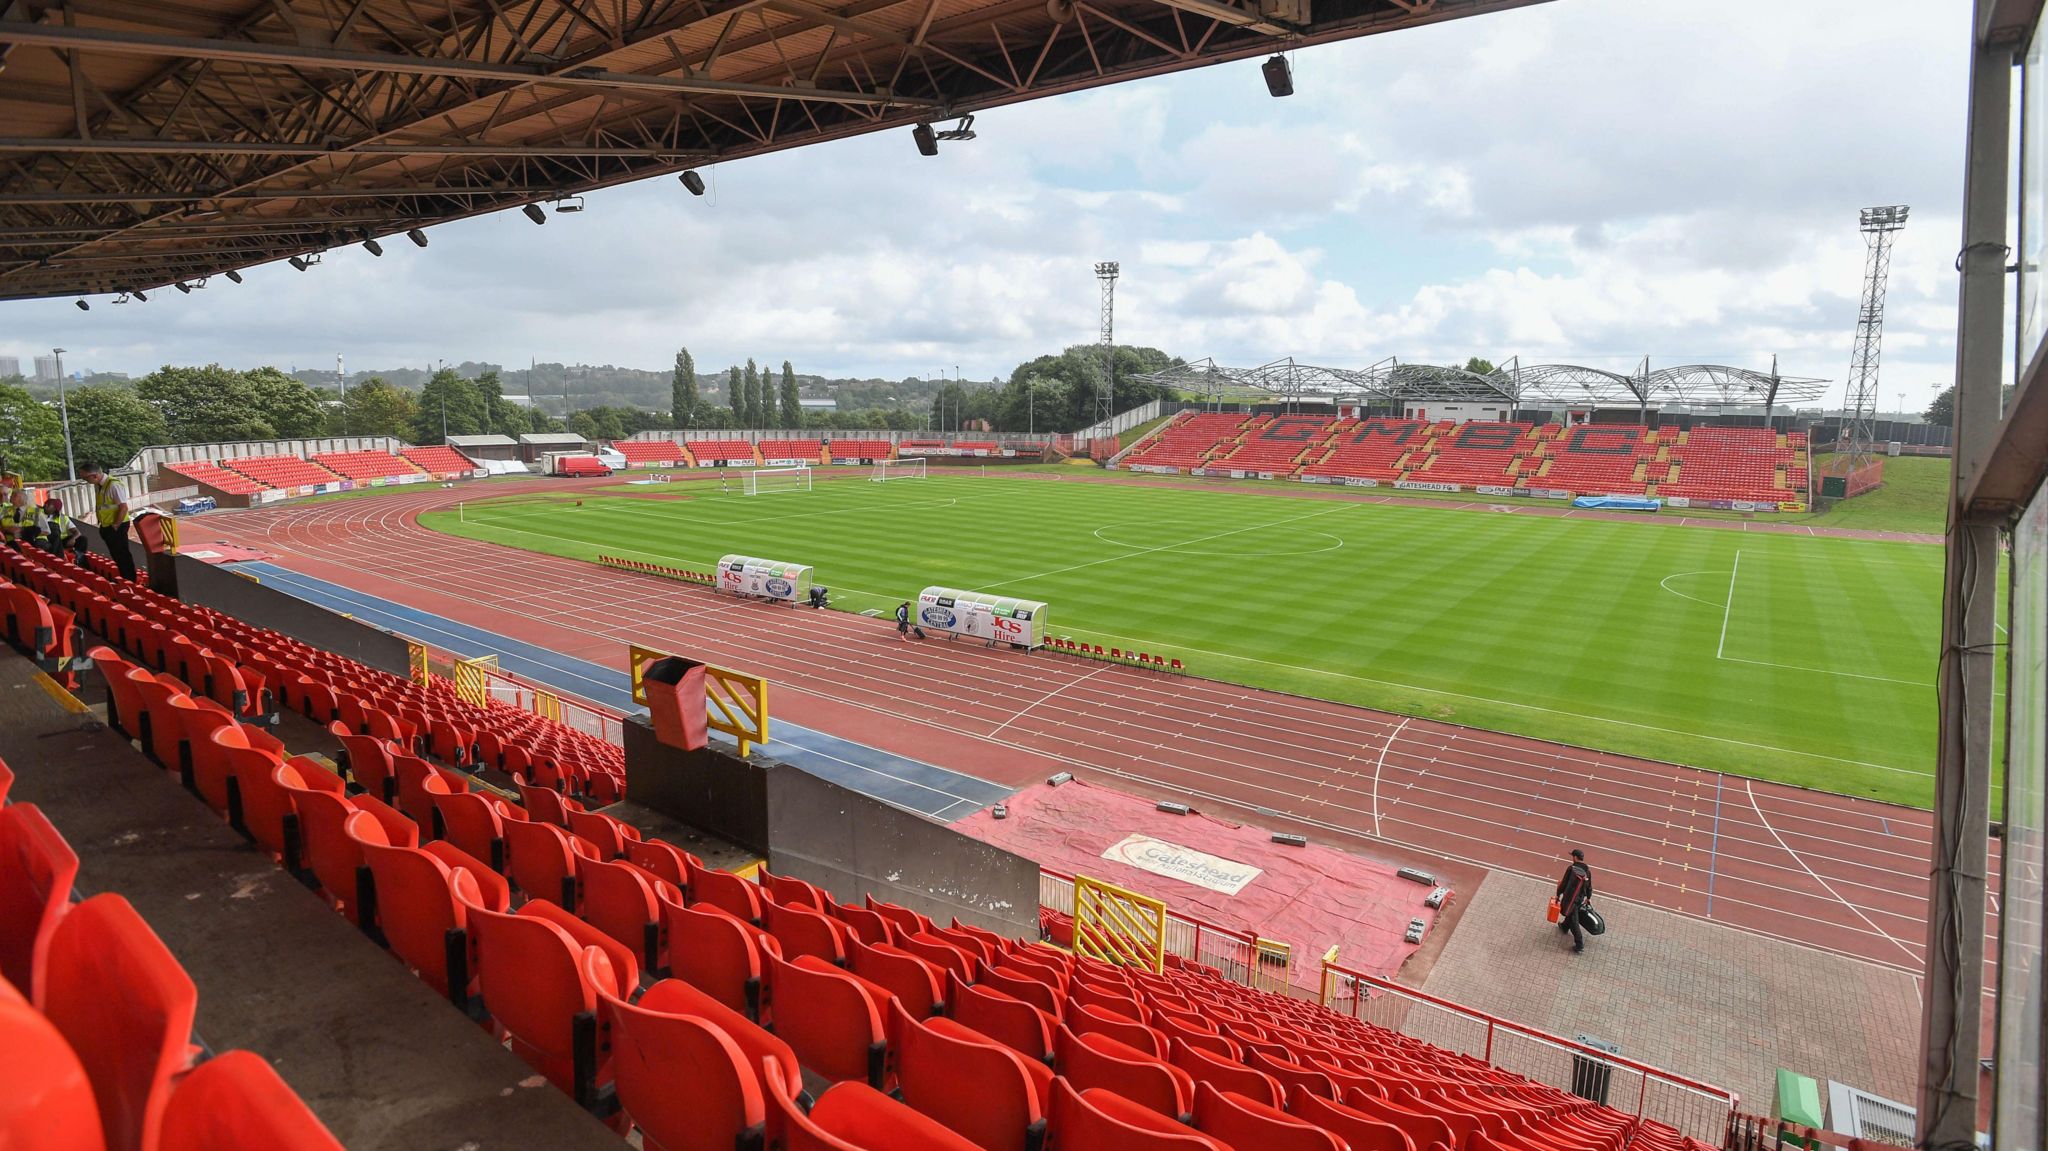 View of Gateshead International Stadium